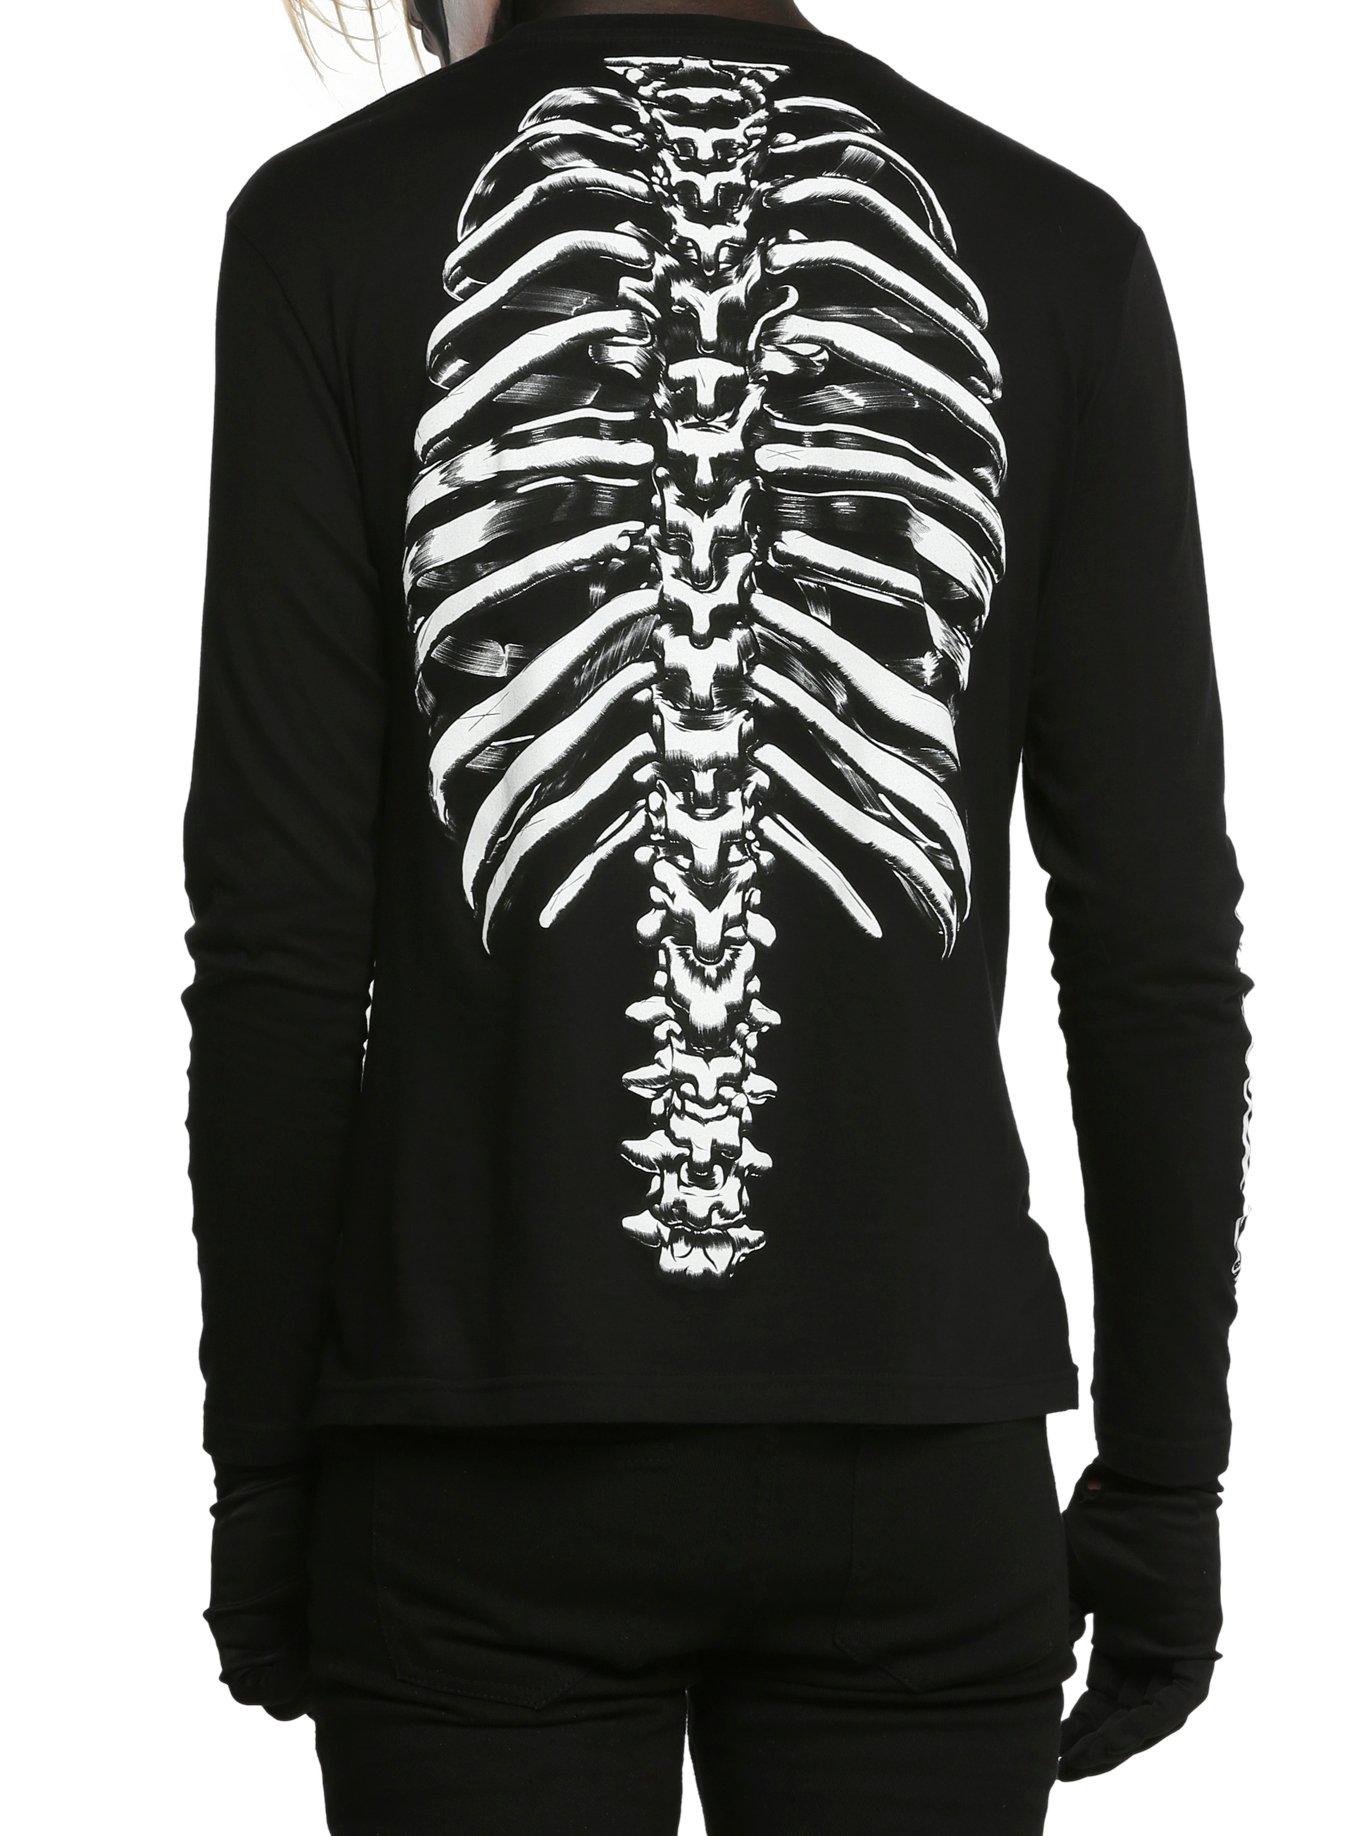 RUDE Black Skeleton Long-Sleeved Shirt, BLACK, alternate